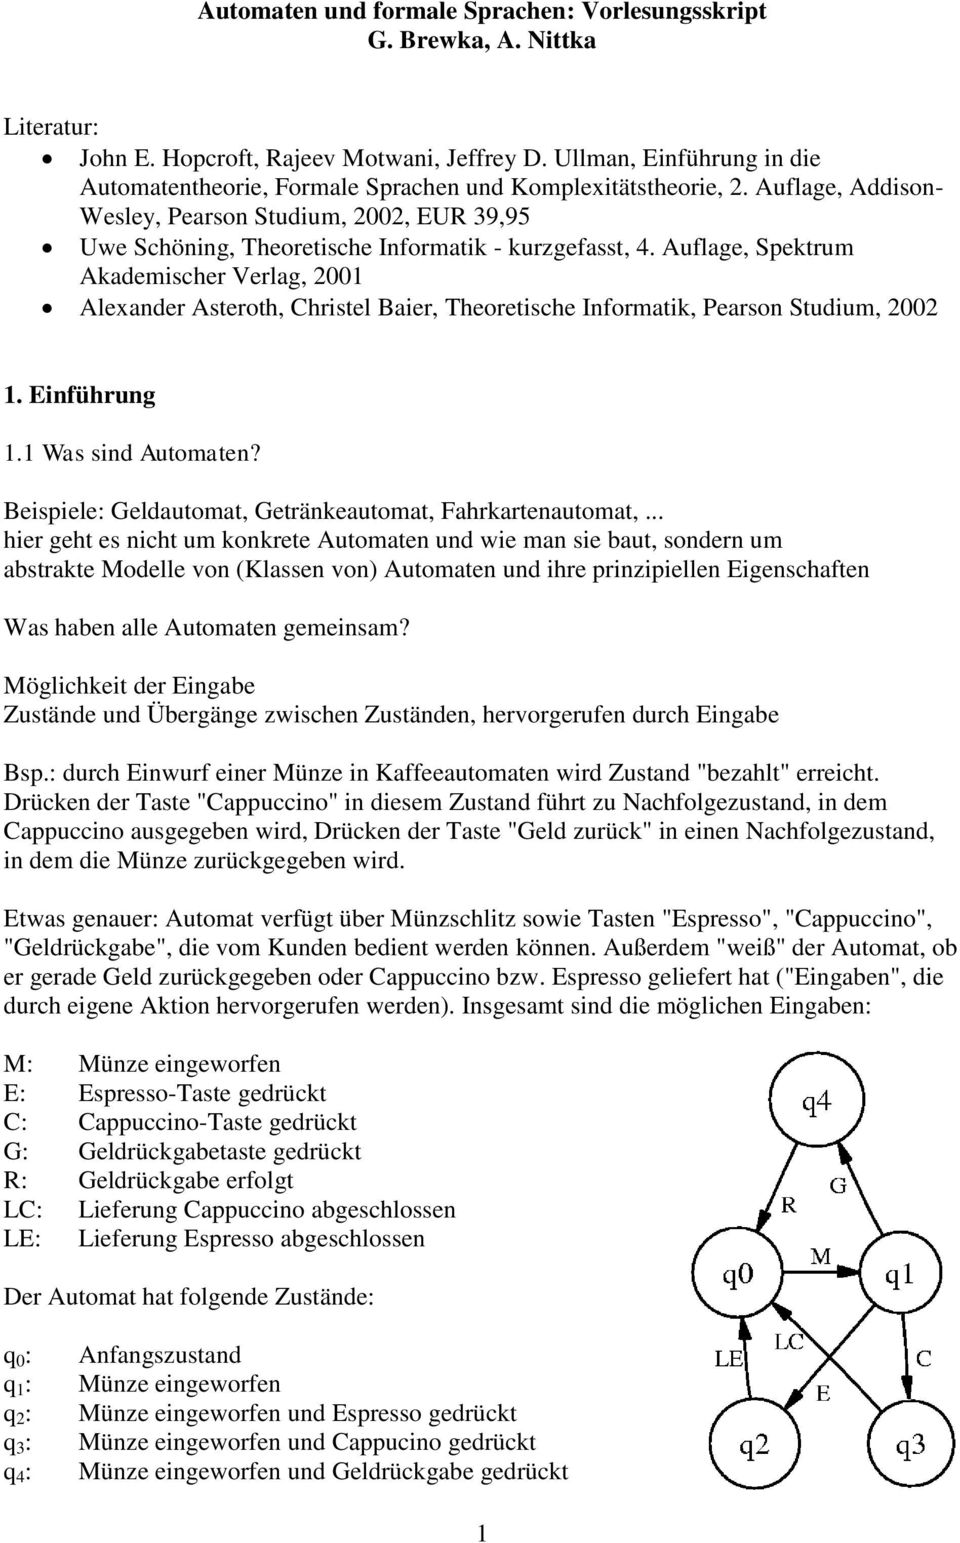 Auflage, Addison- Wesley, Pearson Studium, 2002, EUR 39,95 Uwe Schöning, Theoretische Informatik - kurzgefasst, 4.